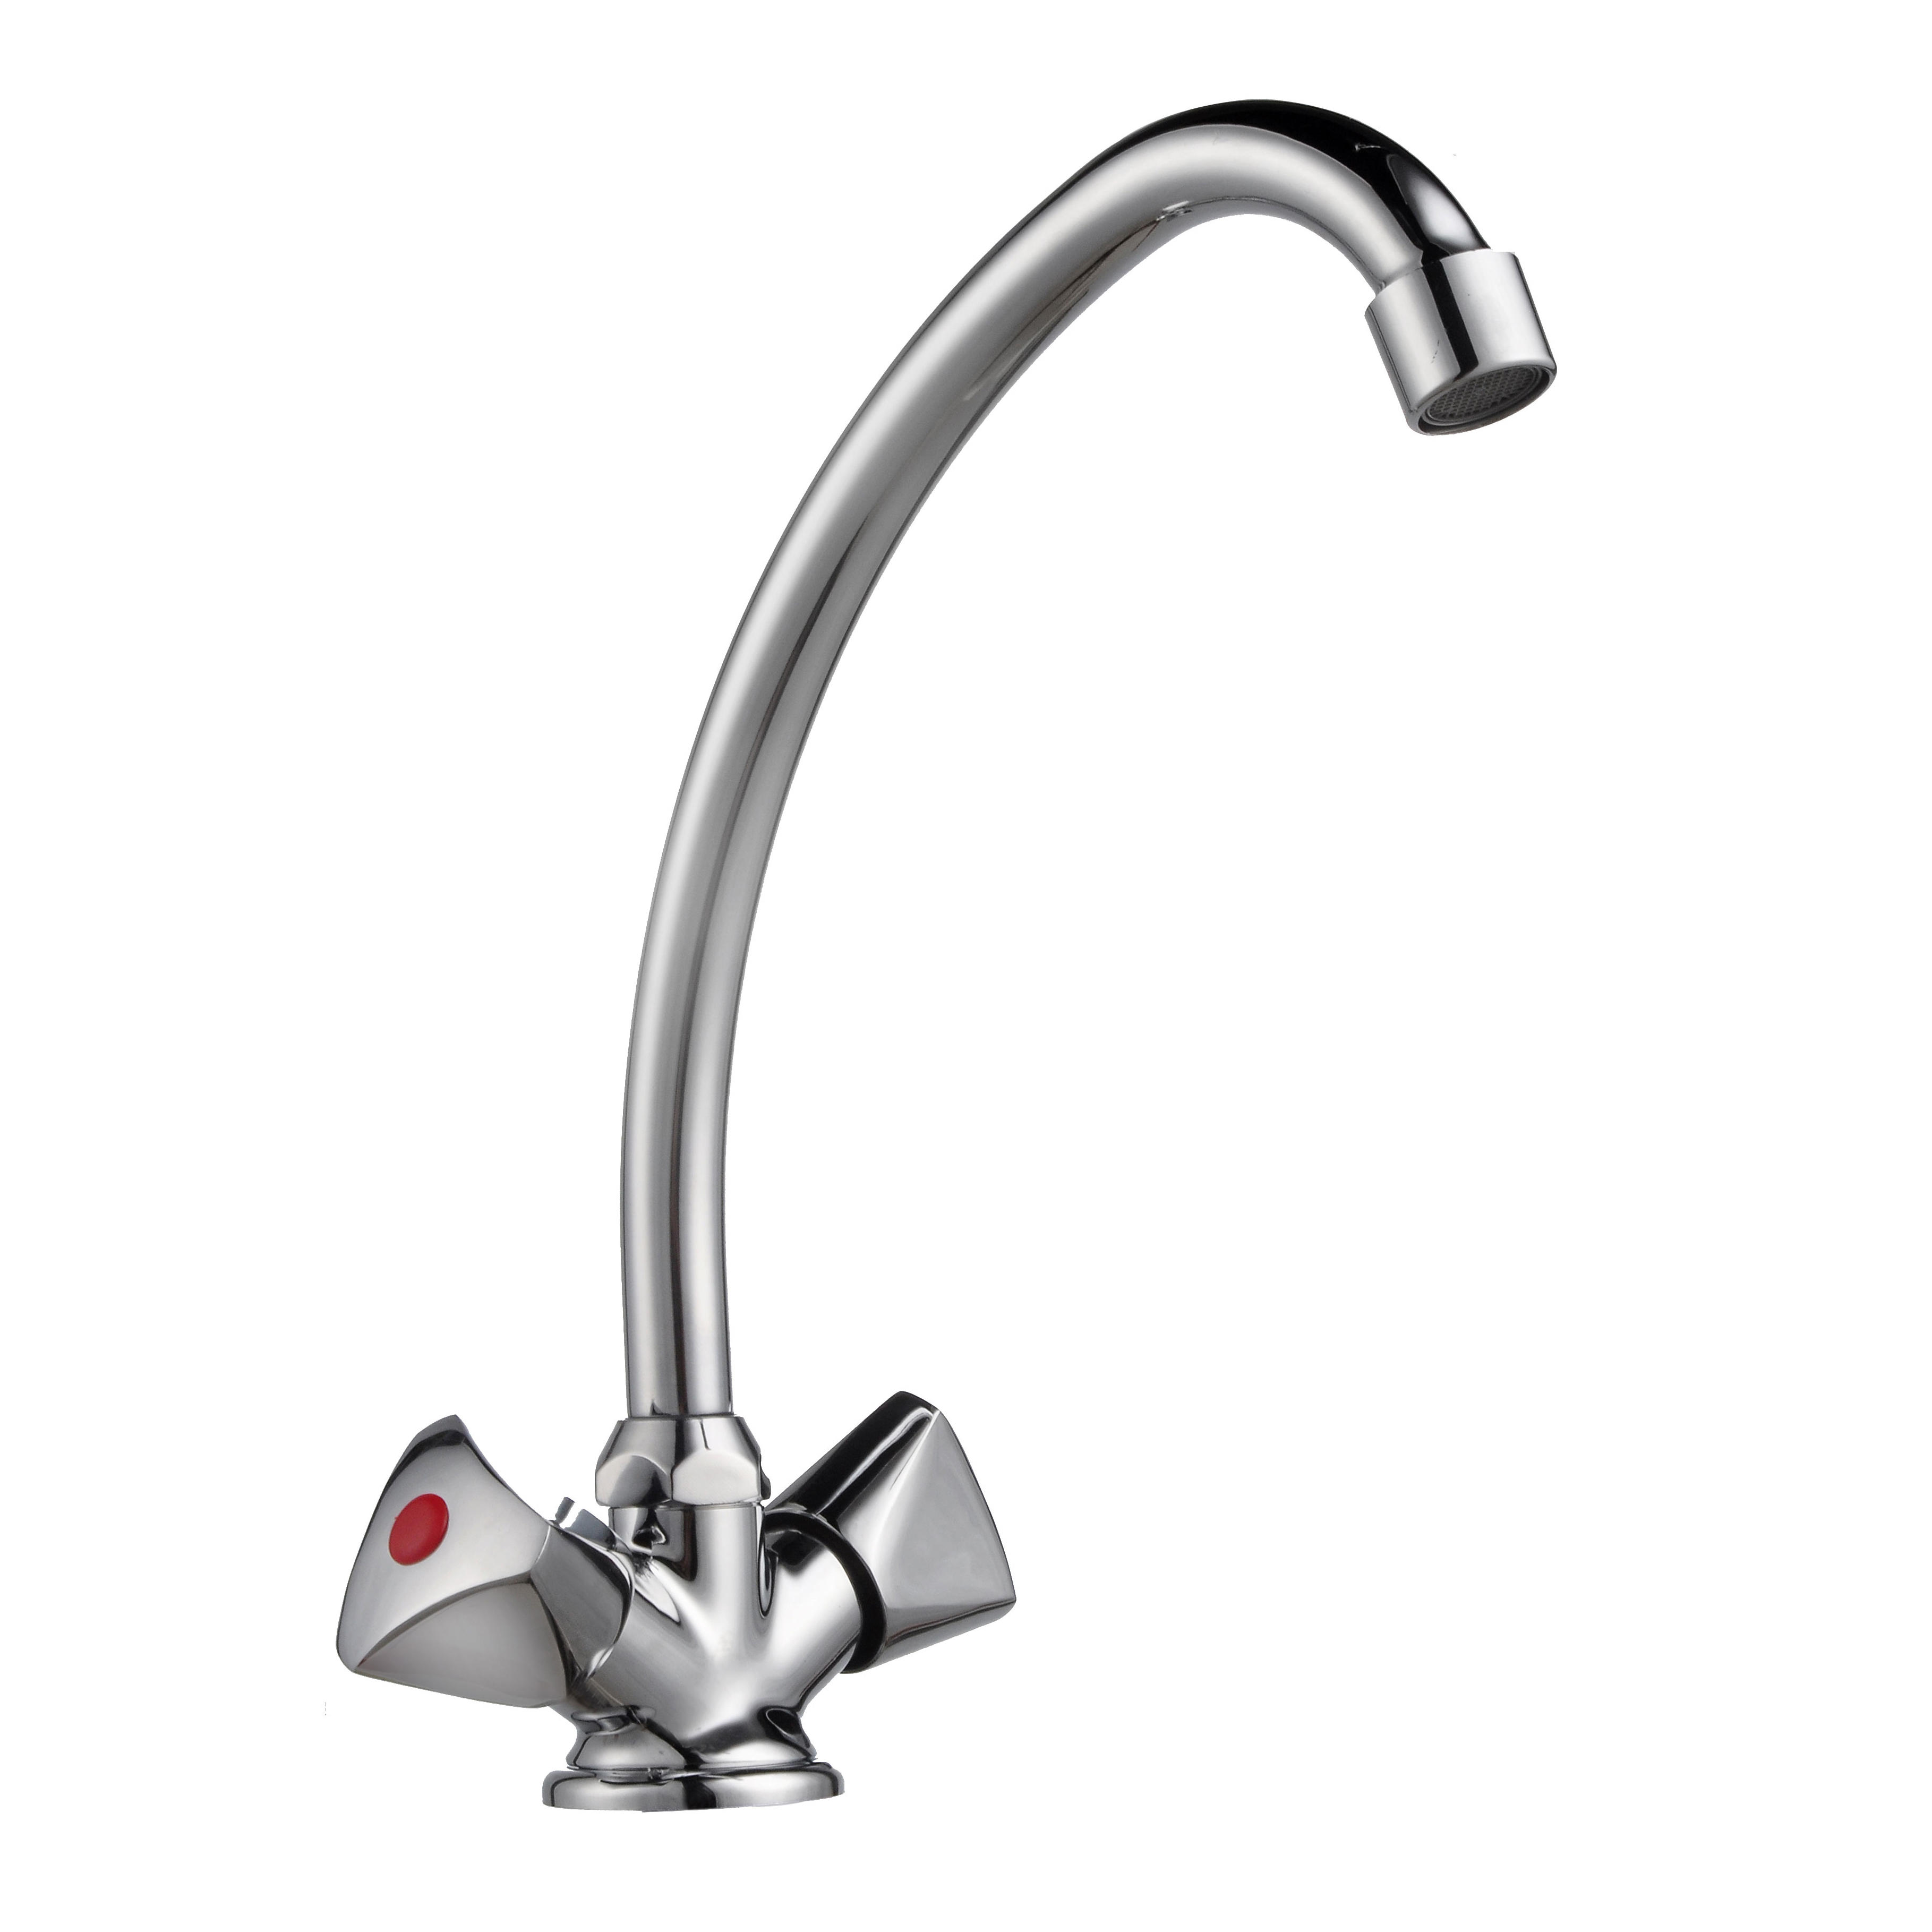 1102-54 rubinetto in ottone doppia maniglia miscelatore cucina bordo vasca acqua calda/fredda, miscelatore lavello